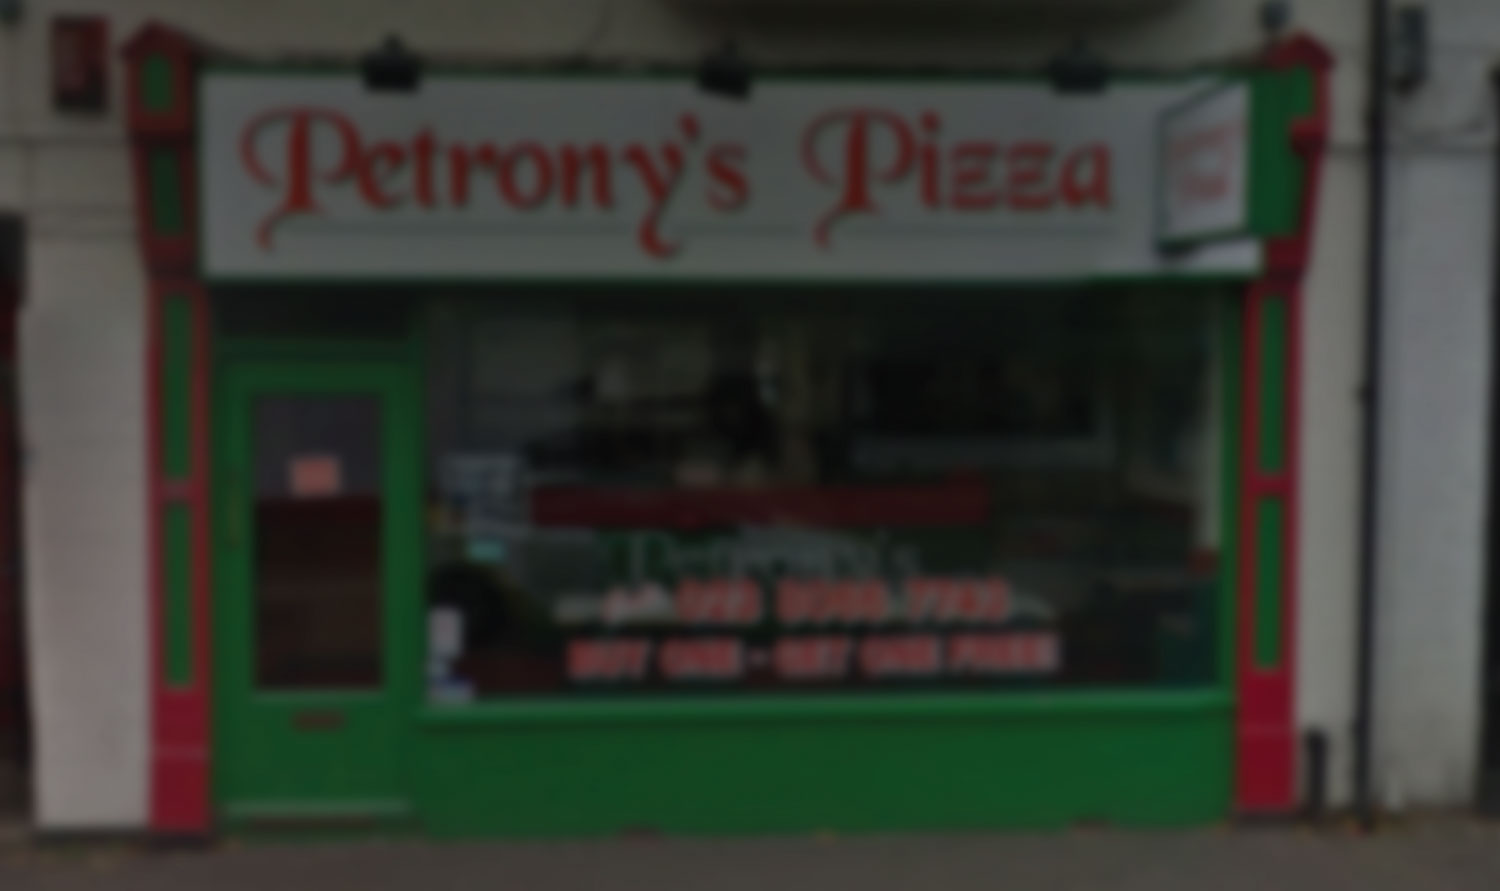 petronys pizza